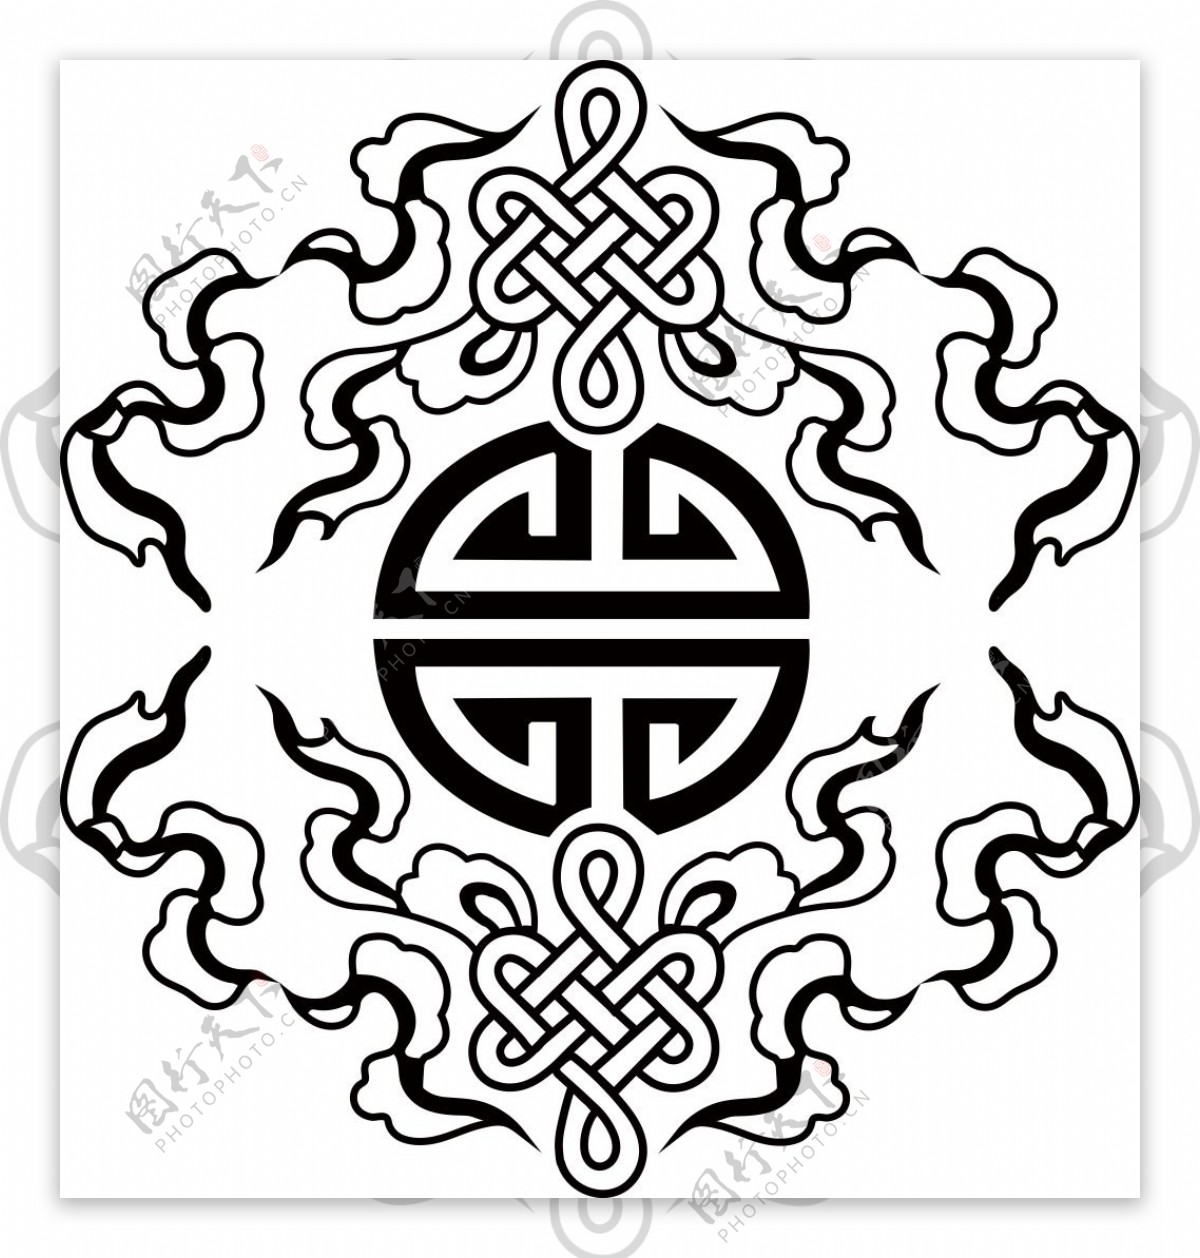 中国传统纹样